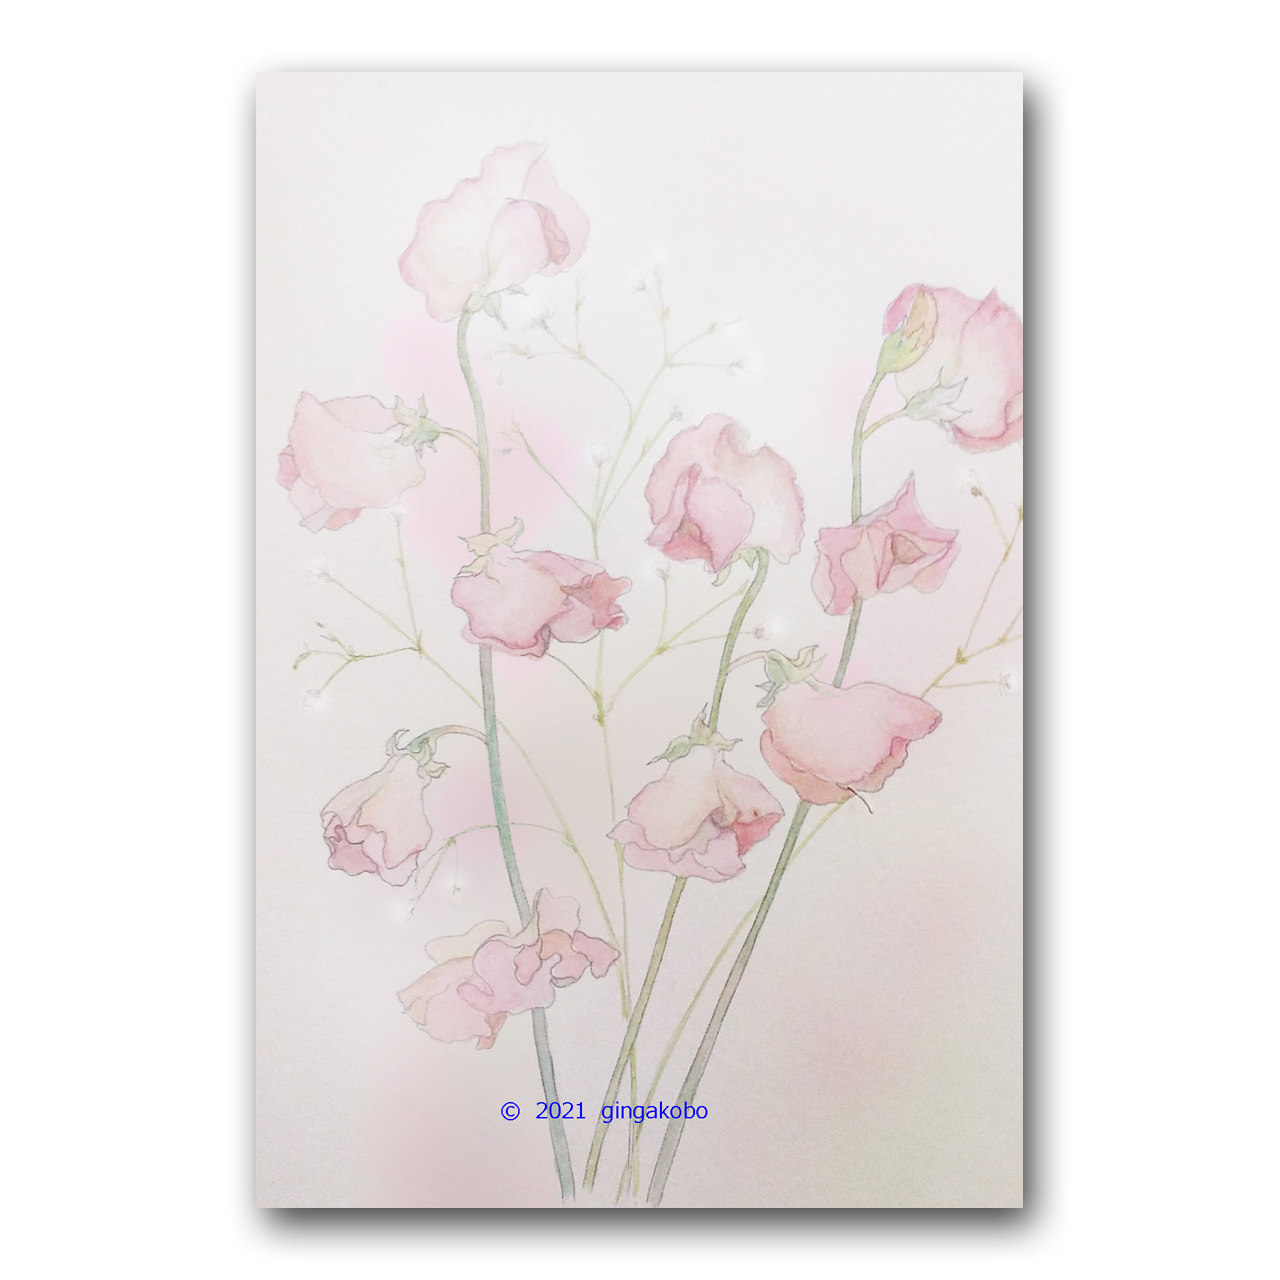 スイートピーの春のこころ 春 ほっこり癒しのイラストポストカード2枚組 No 1311 Iichi ハンドメイド クラフト作品 手仕事品の通販